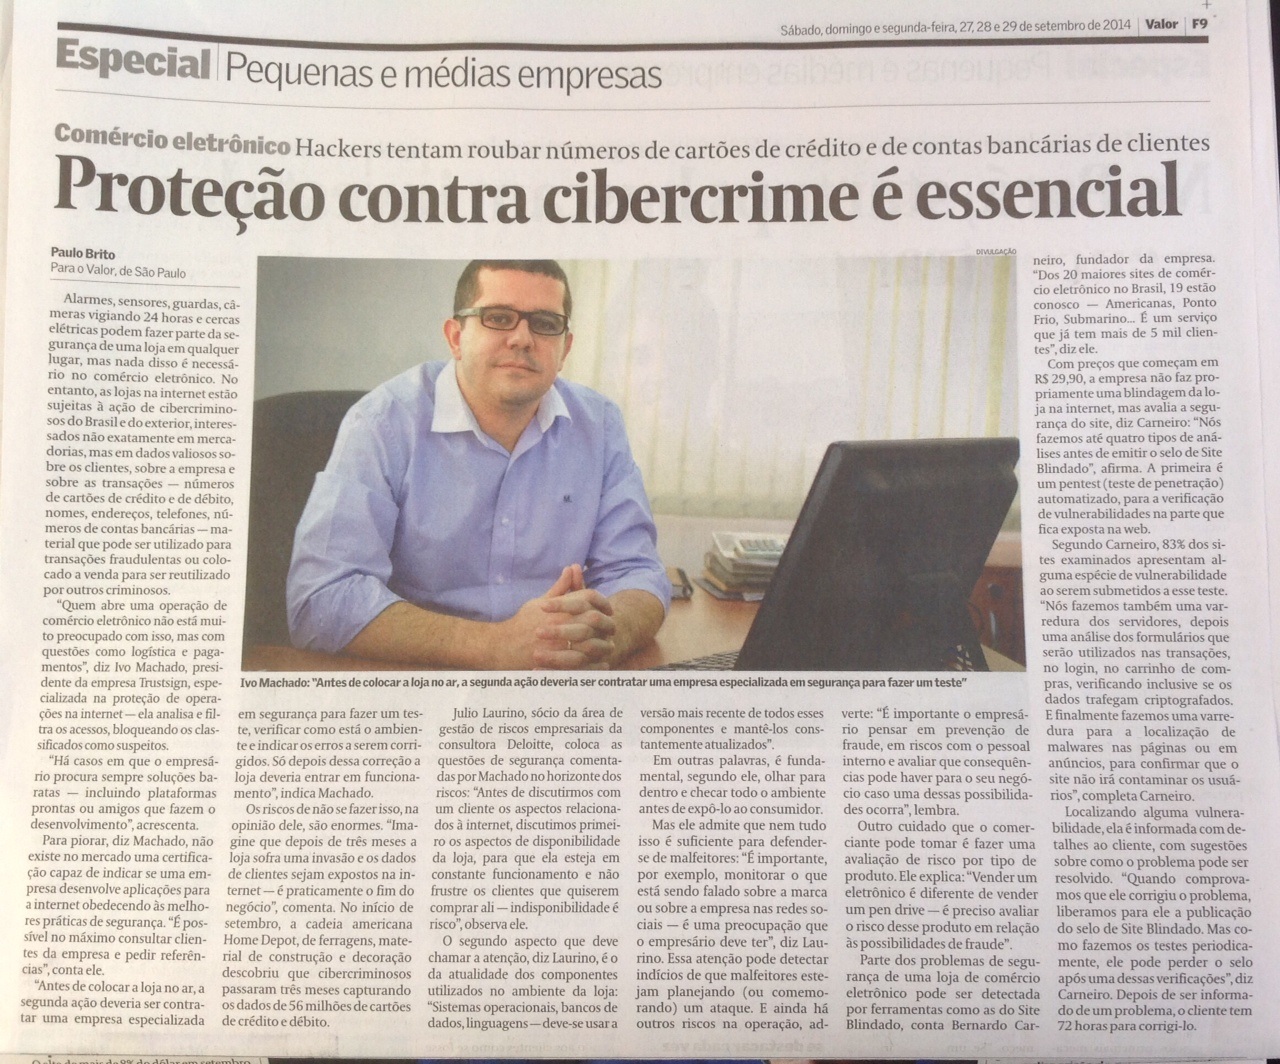 Site Blindado no Jornal Valor Econômico 29.09.2014